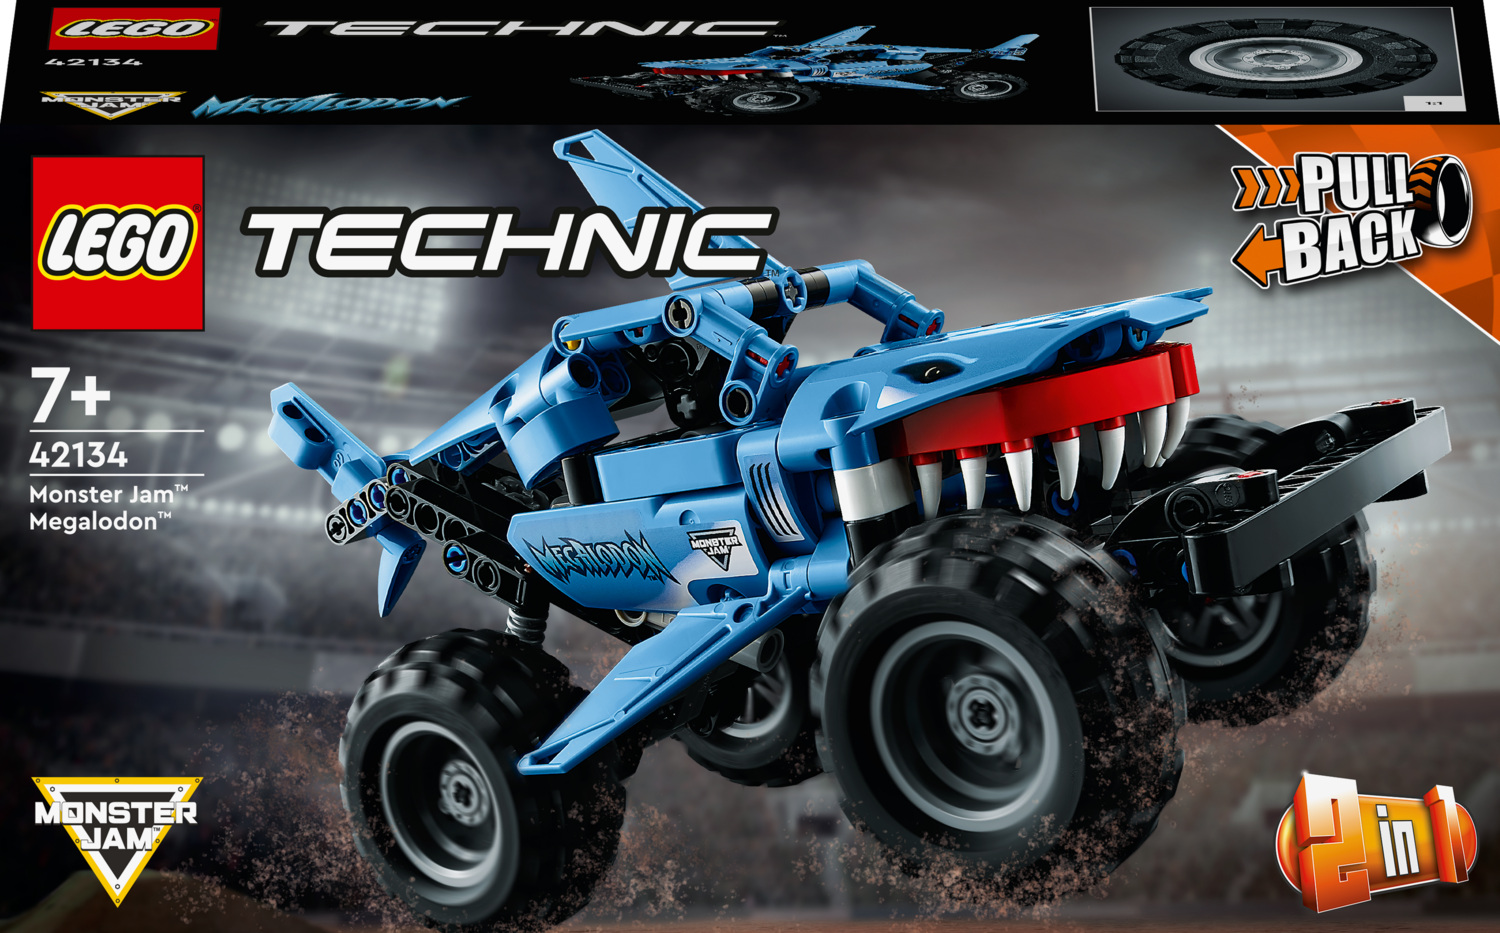 LEGO Technic Monster Jam™ Megalodon™ 42134 - LEGO, LEGO Technic